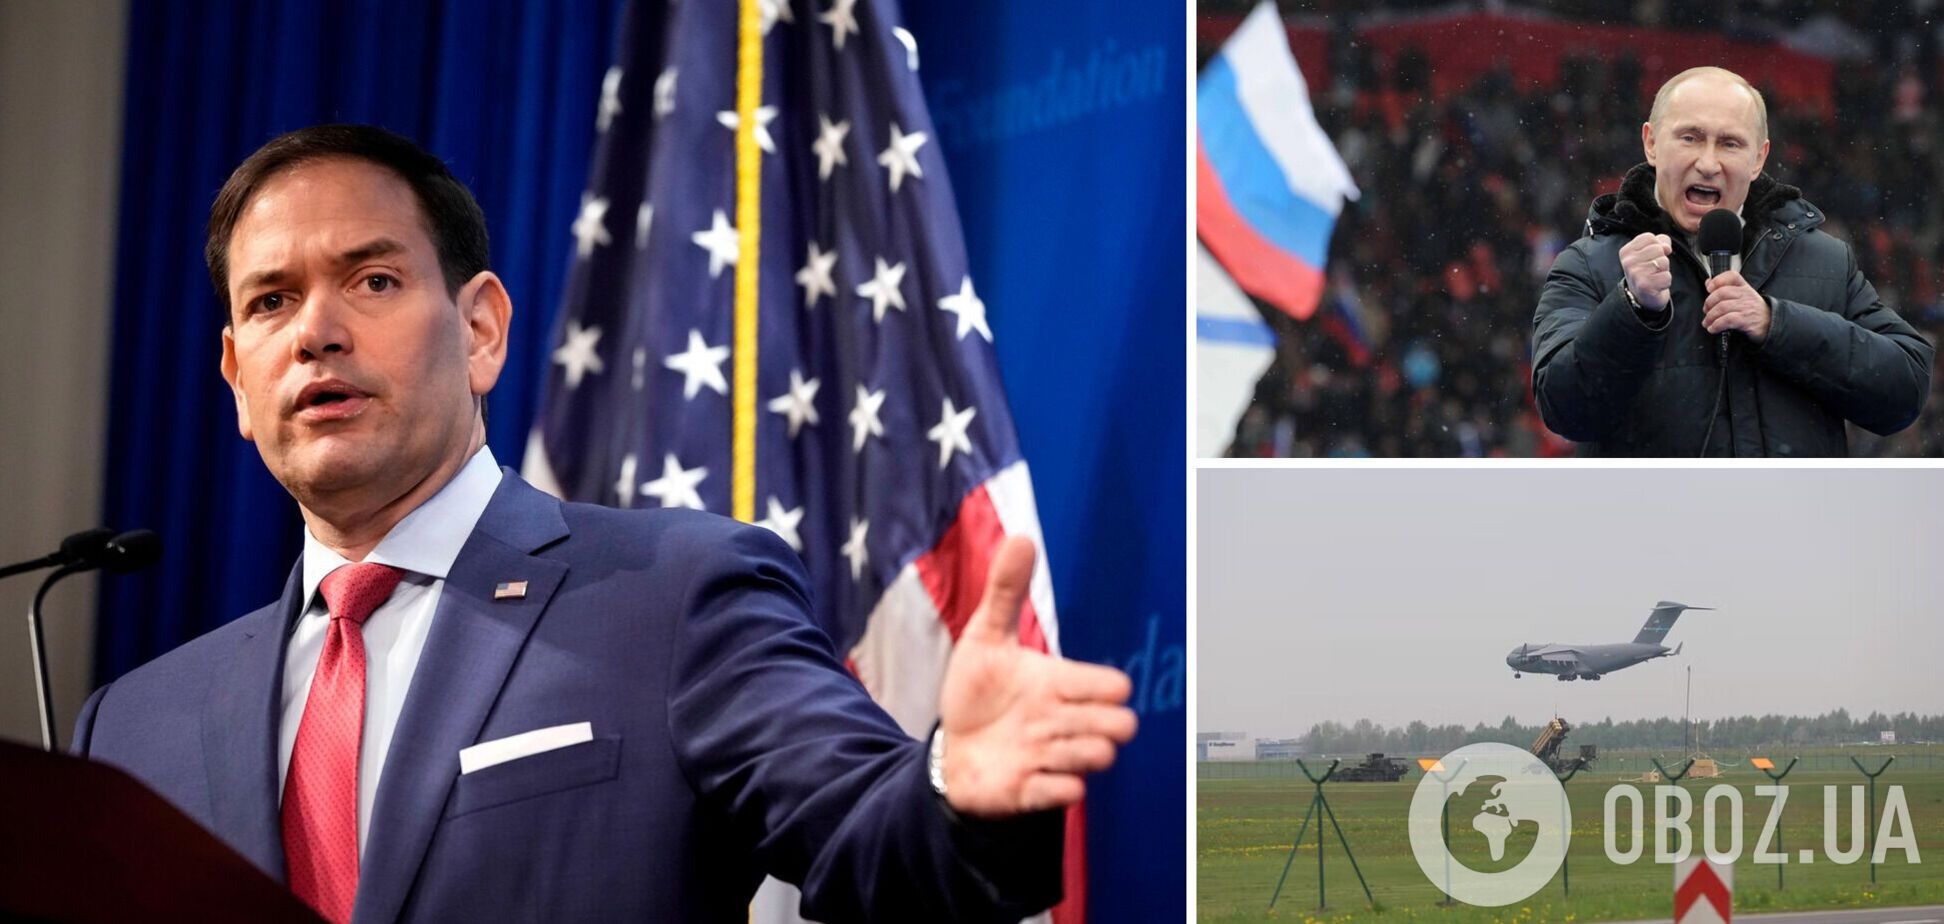 Россия может нанести удары по аэропортам Польши: американский сенатор указал на угрозу